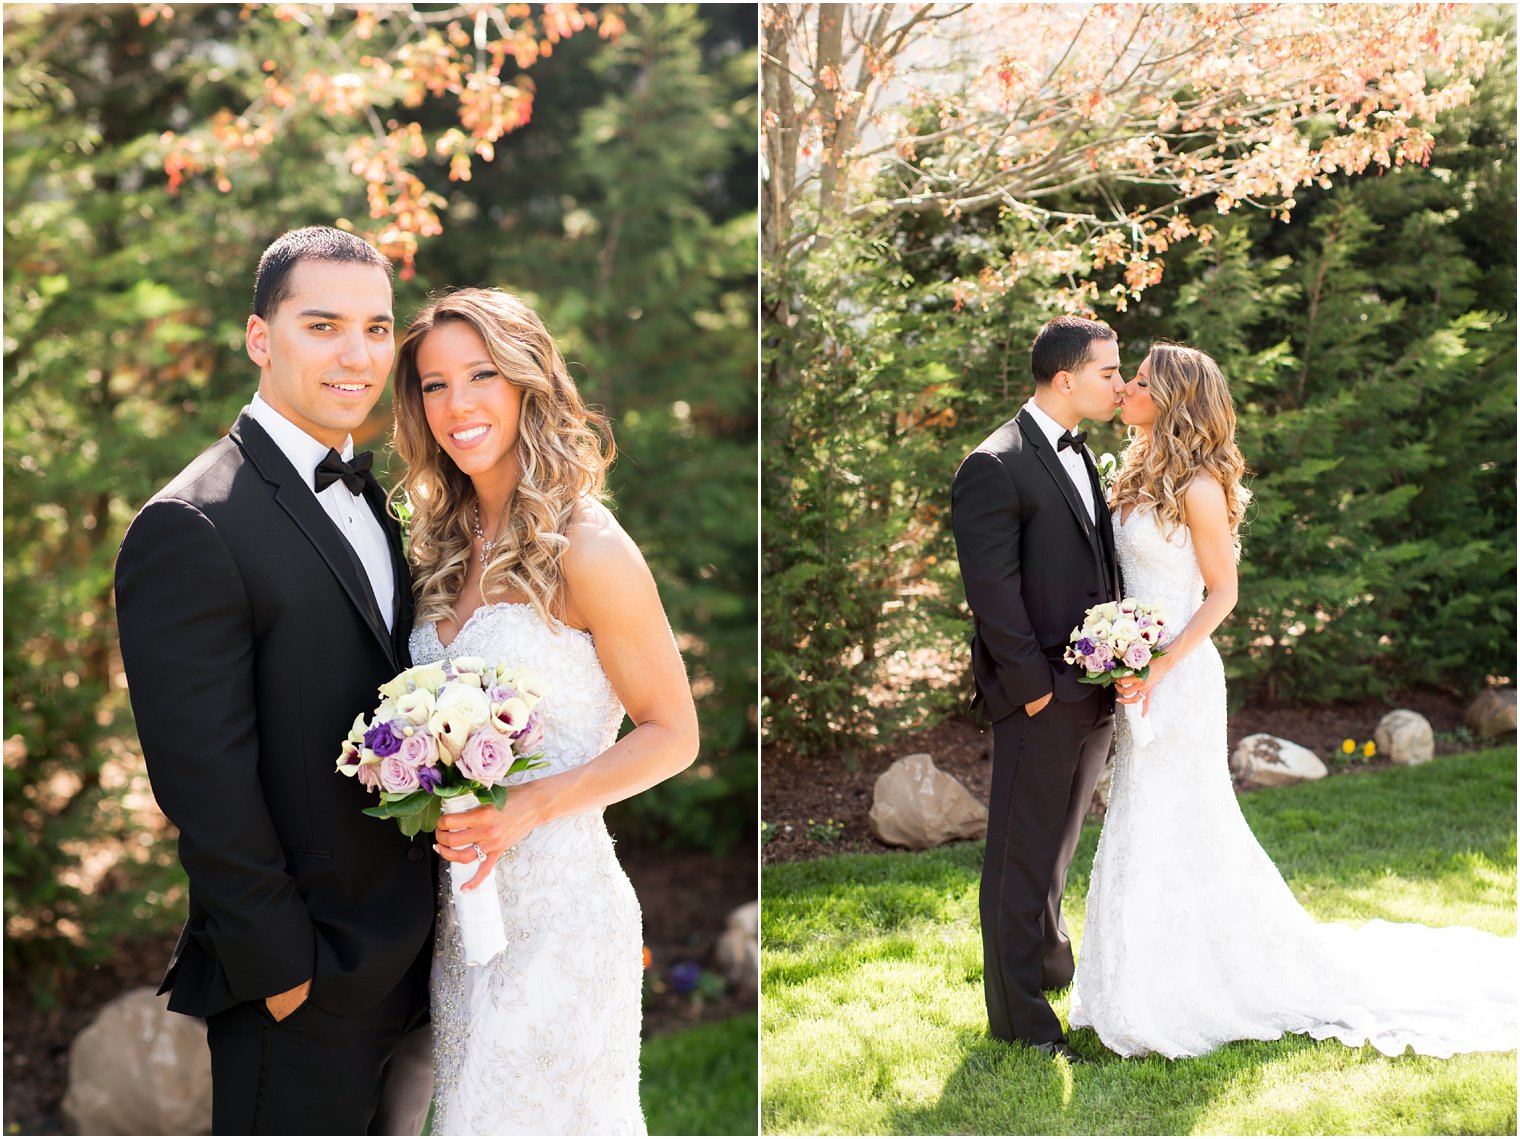 NJ Wedding Photographers | Photos by Idalia Photography